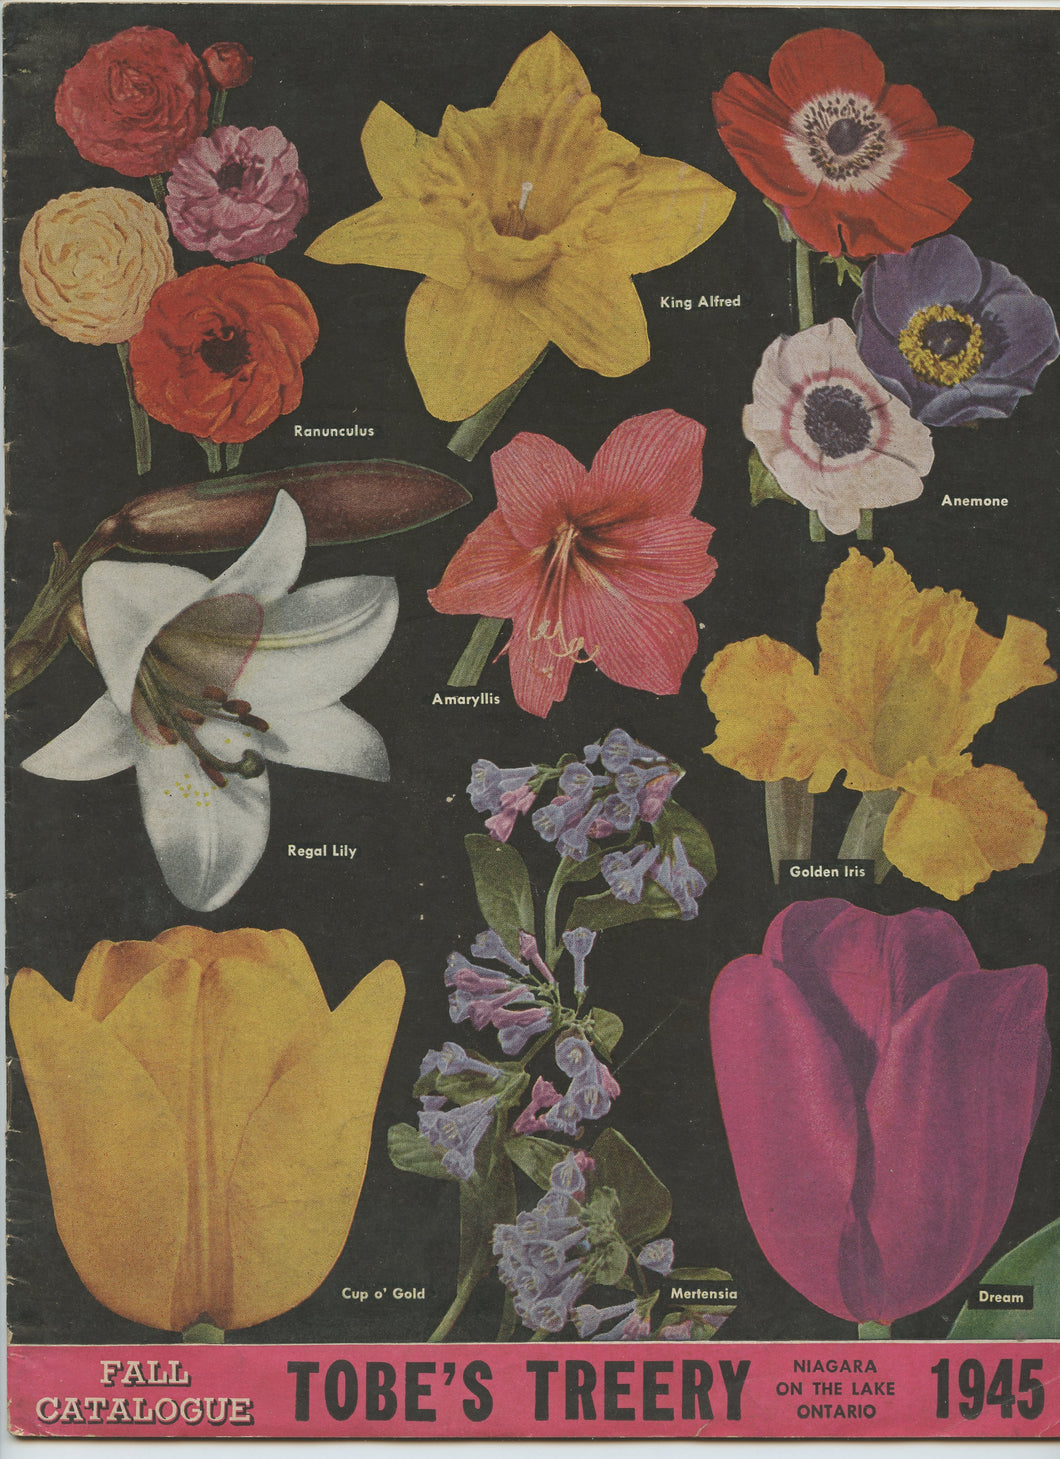 Tobe's Treery Fall 1945 catalogue